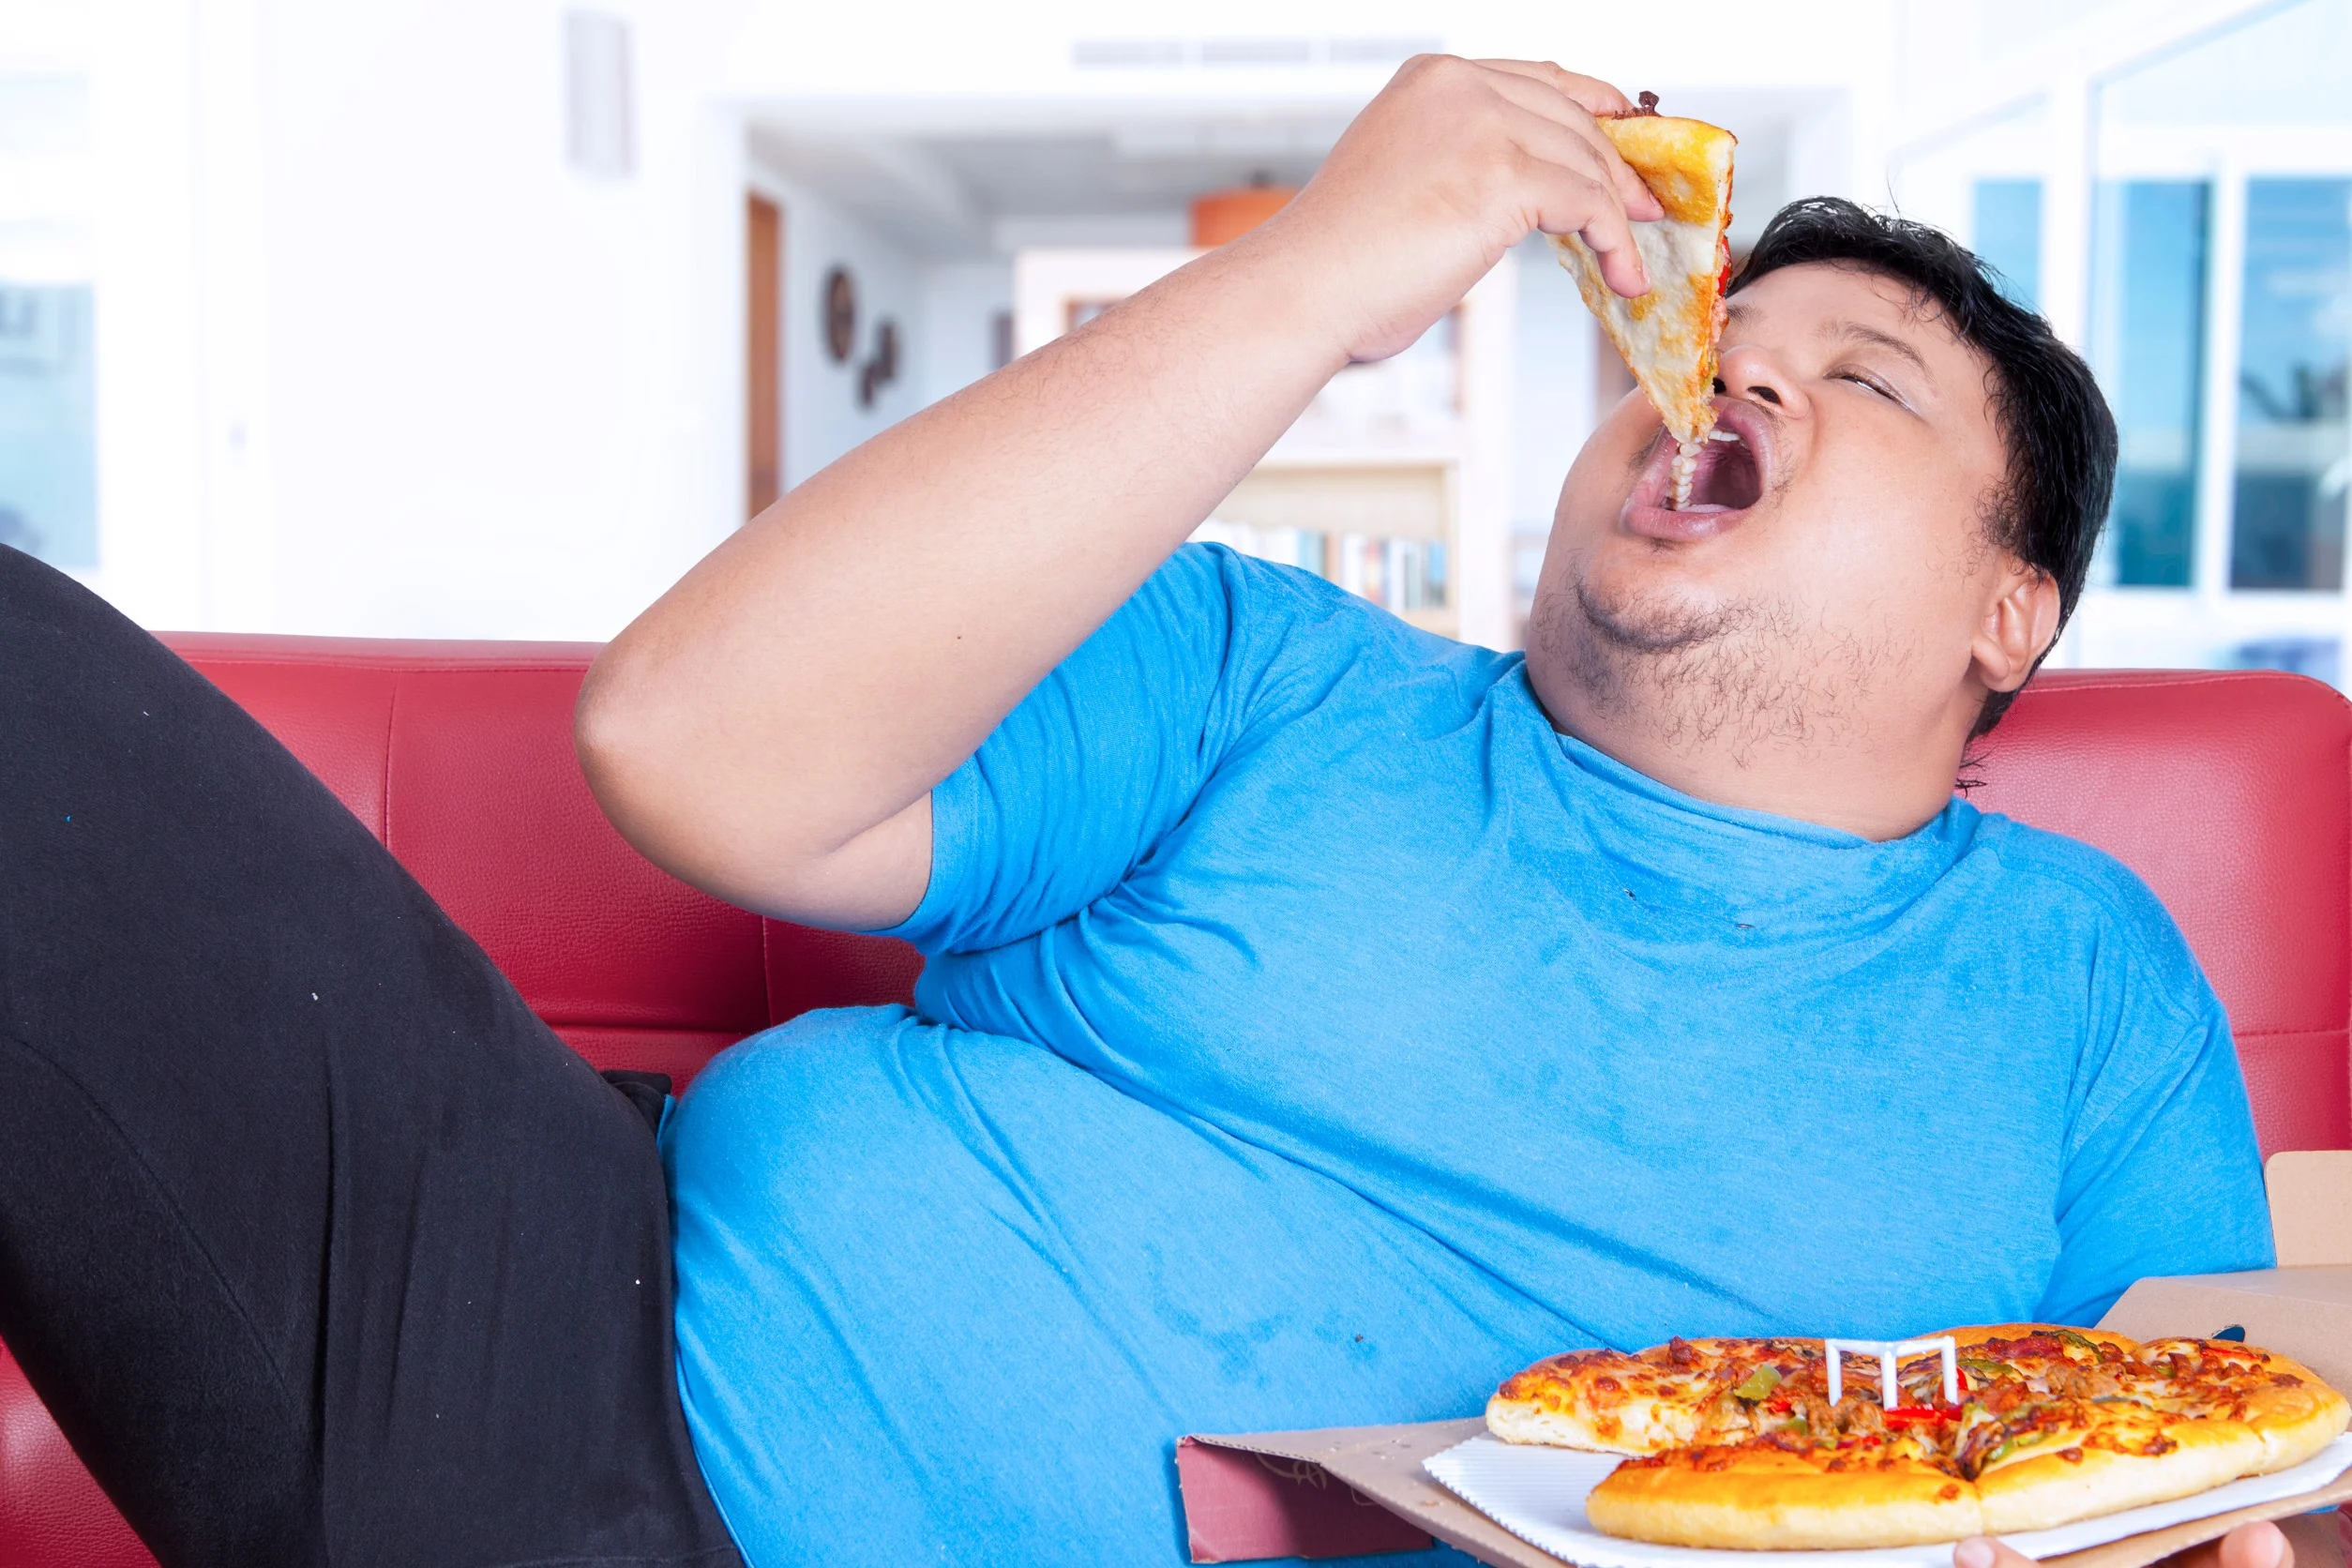 Moet het onderwerp overgewicht meer openlijk en constructief besproken worden in de samenleving? 20